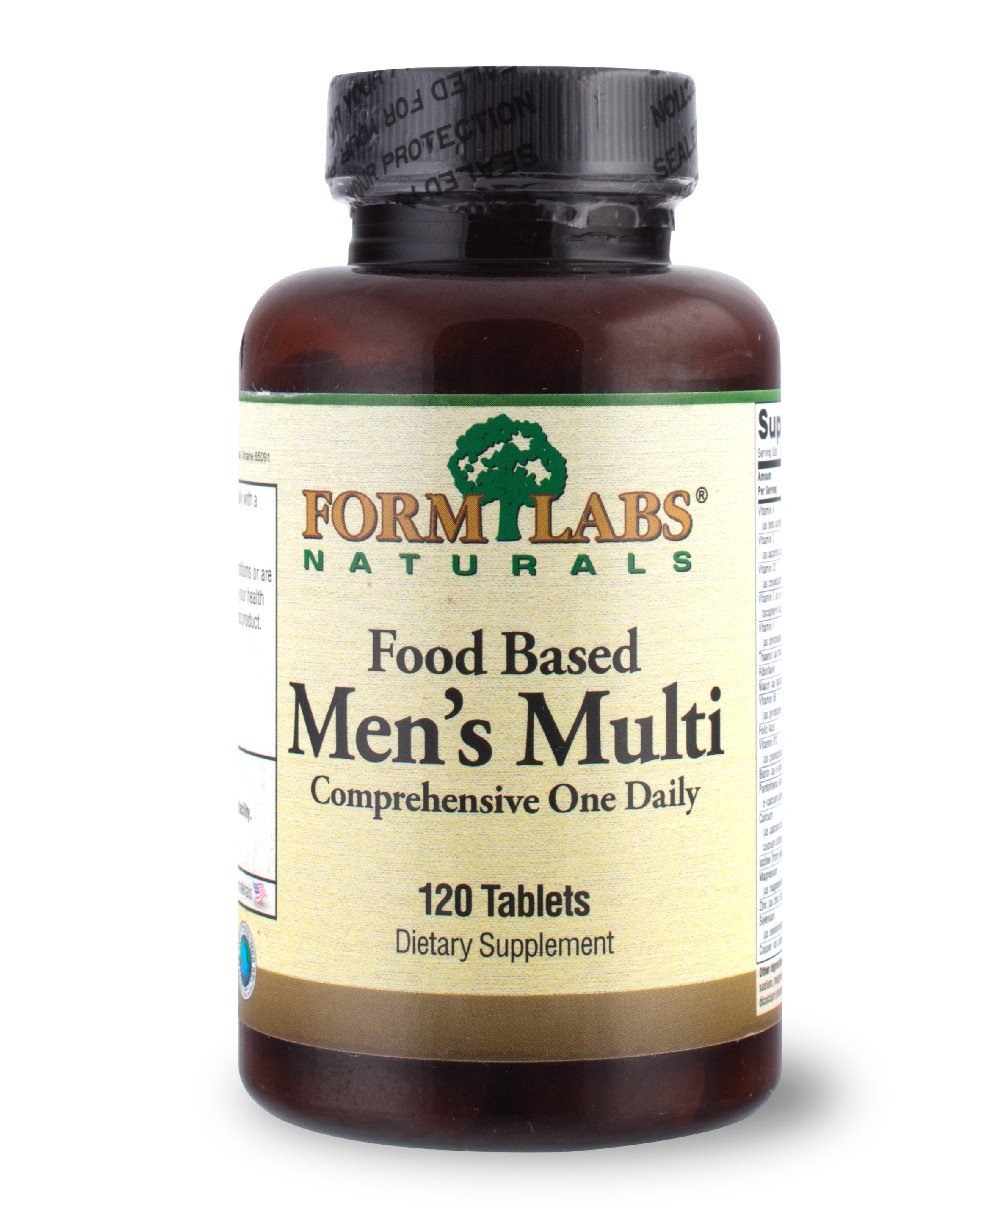 FLN Food Based Men's Multi 120 tab,  мл, Form Labs Naturals. Витамины и минералы